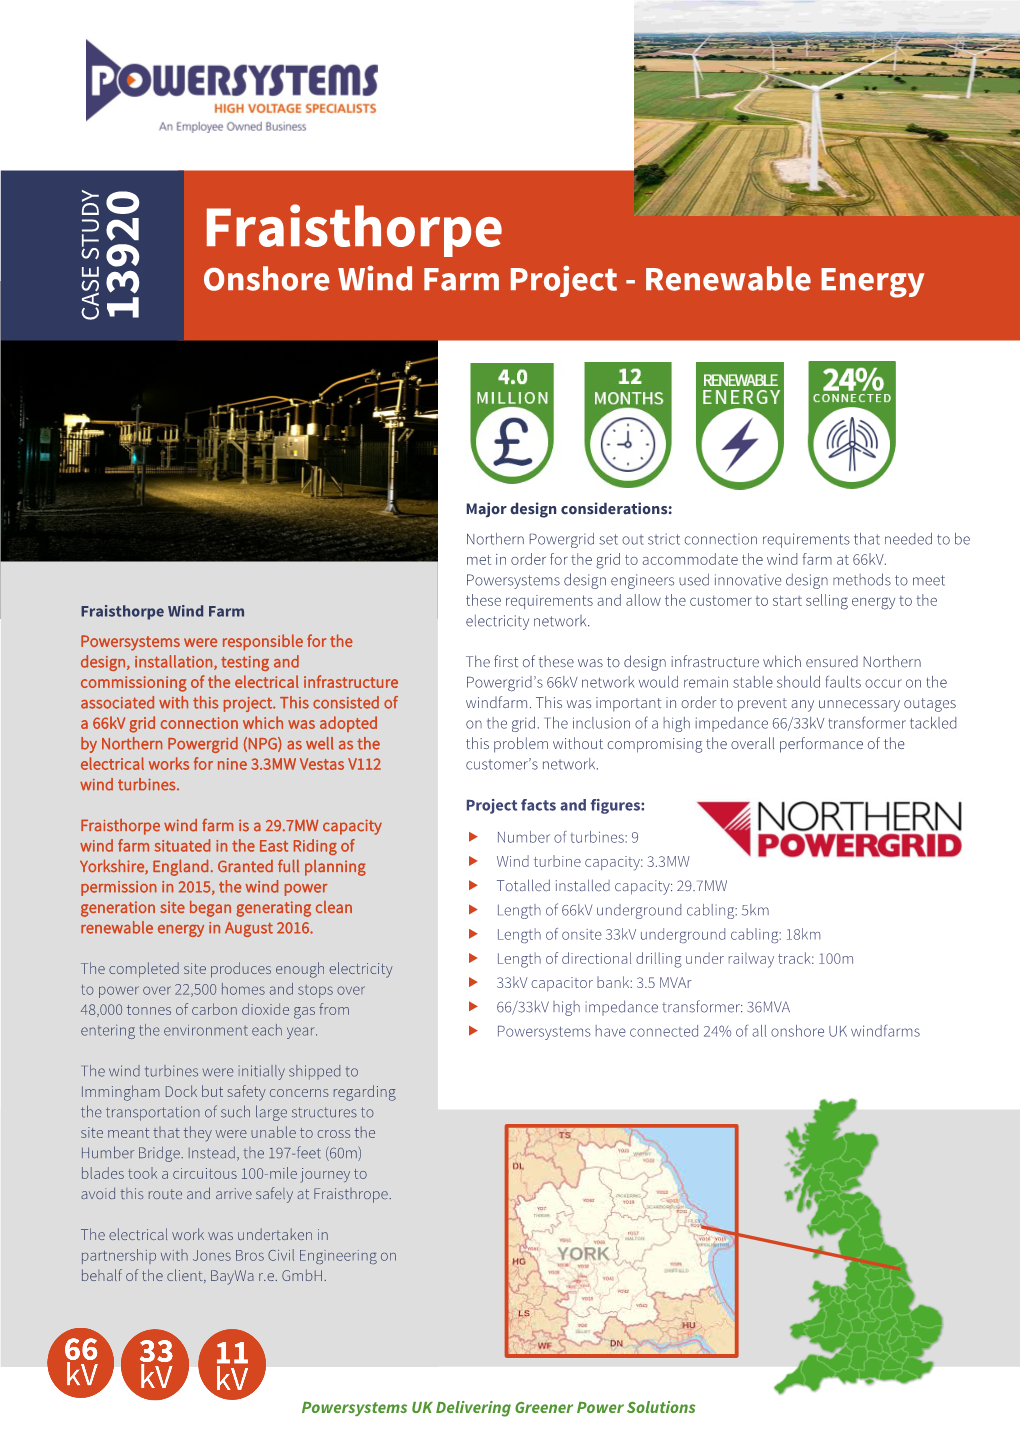 Read Case Study for Fraisthorpe Wind Farm Project